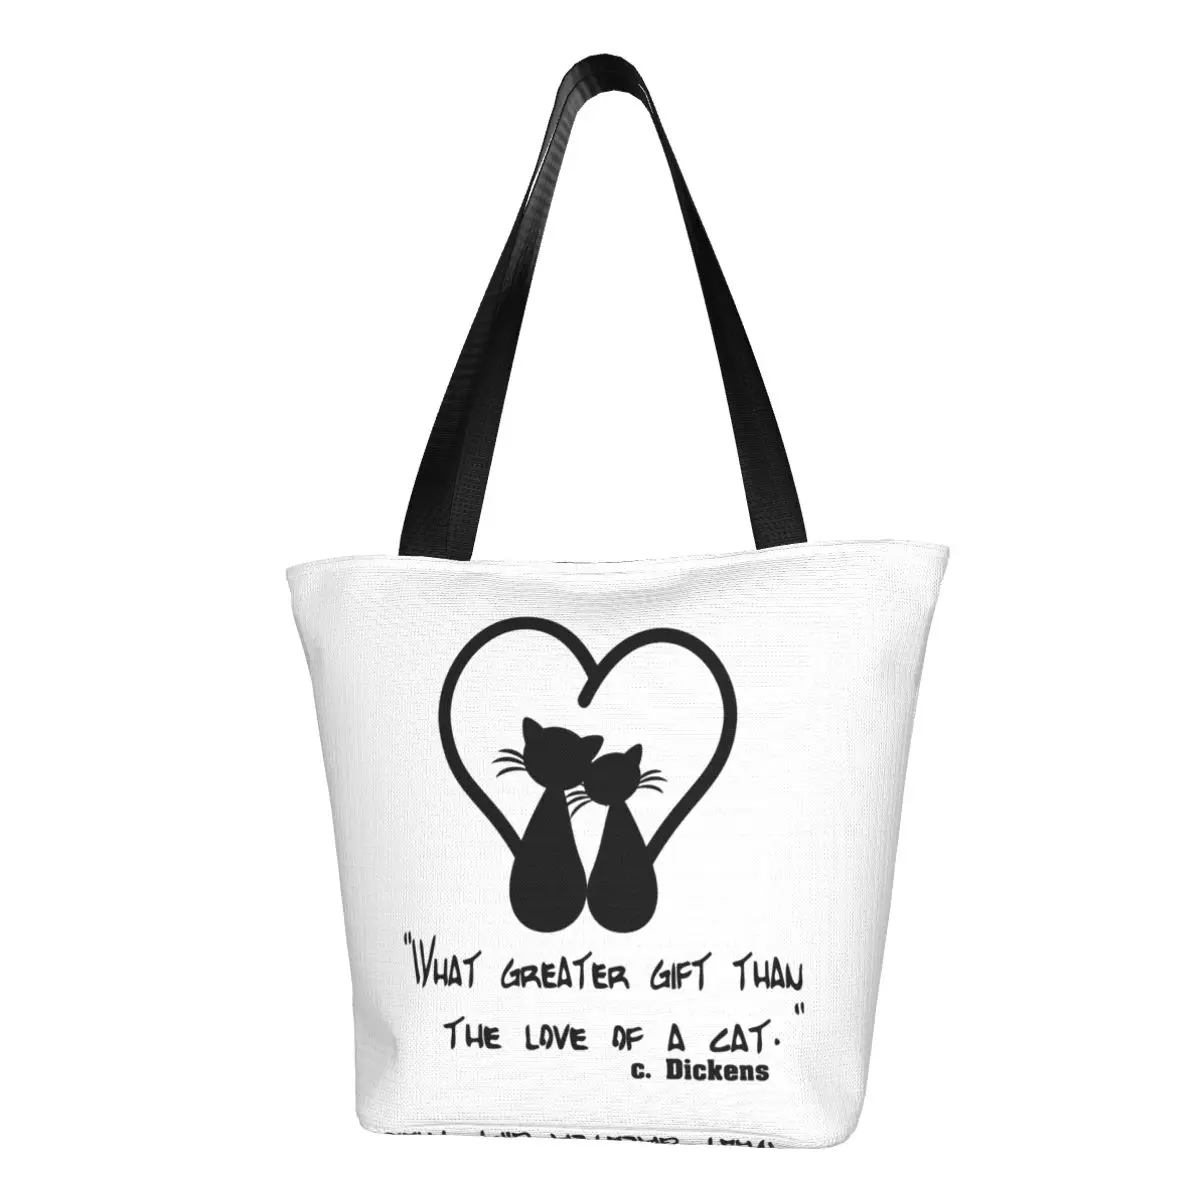 

Сумка-шоппер Love Of A Cat, черная сумка на плечо с сердечком, Женская пляжная сумка-тоут, стильные сумки на заказ